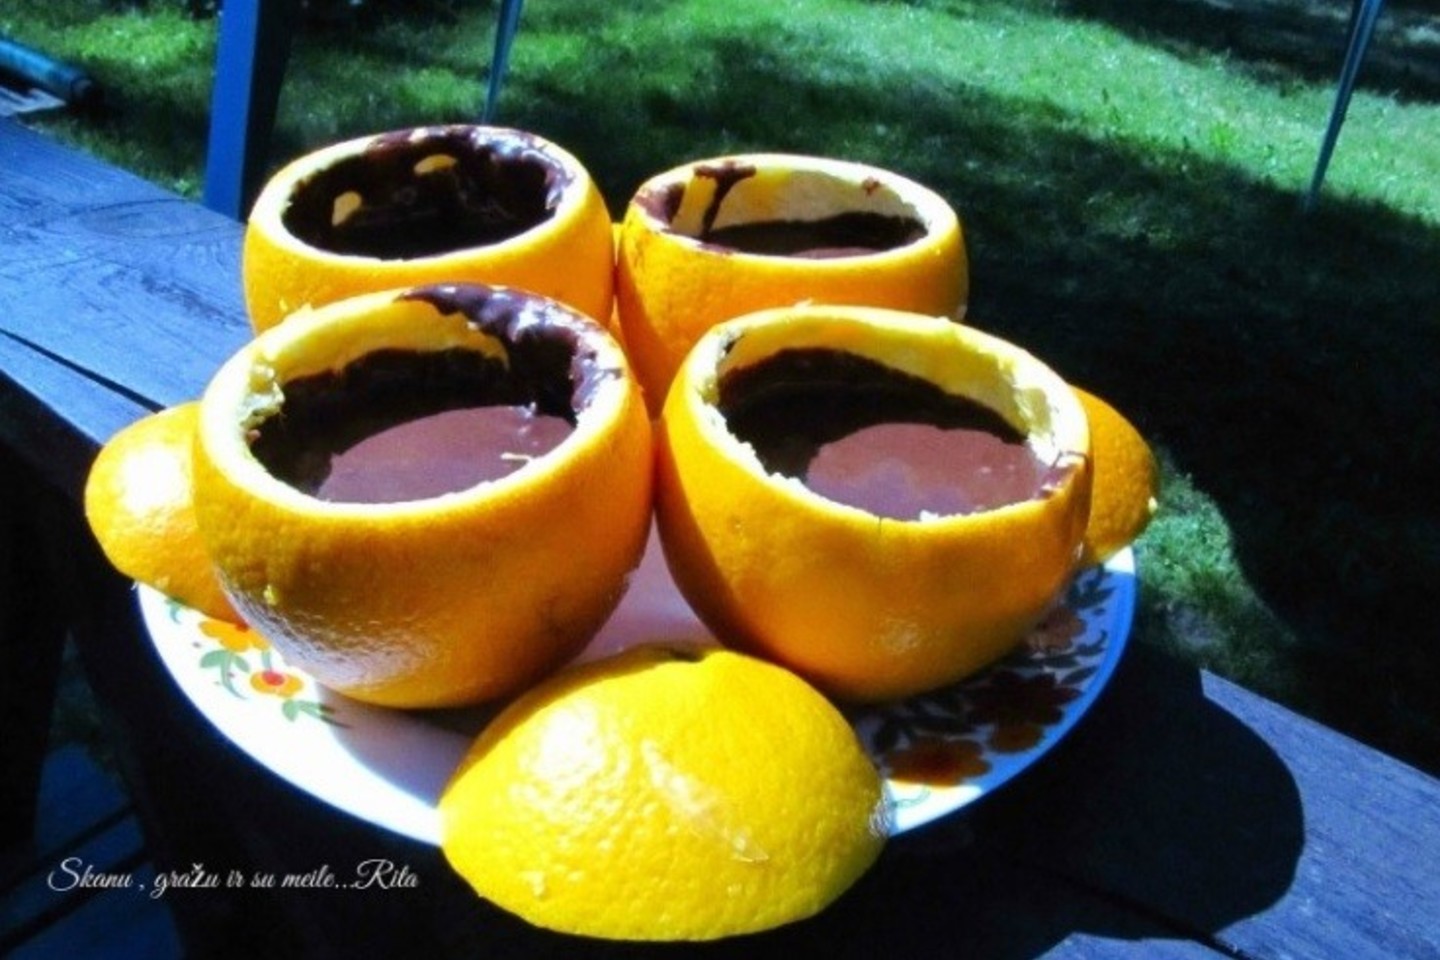 Apelsinų žievelių nepripildykite tešla iki pat viršaus – palikite vietos pakilti pyragui.<br>Nuotr. iš ritosreceptai.lt